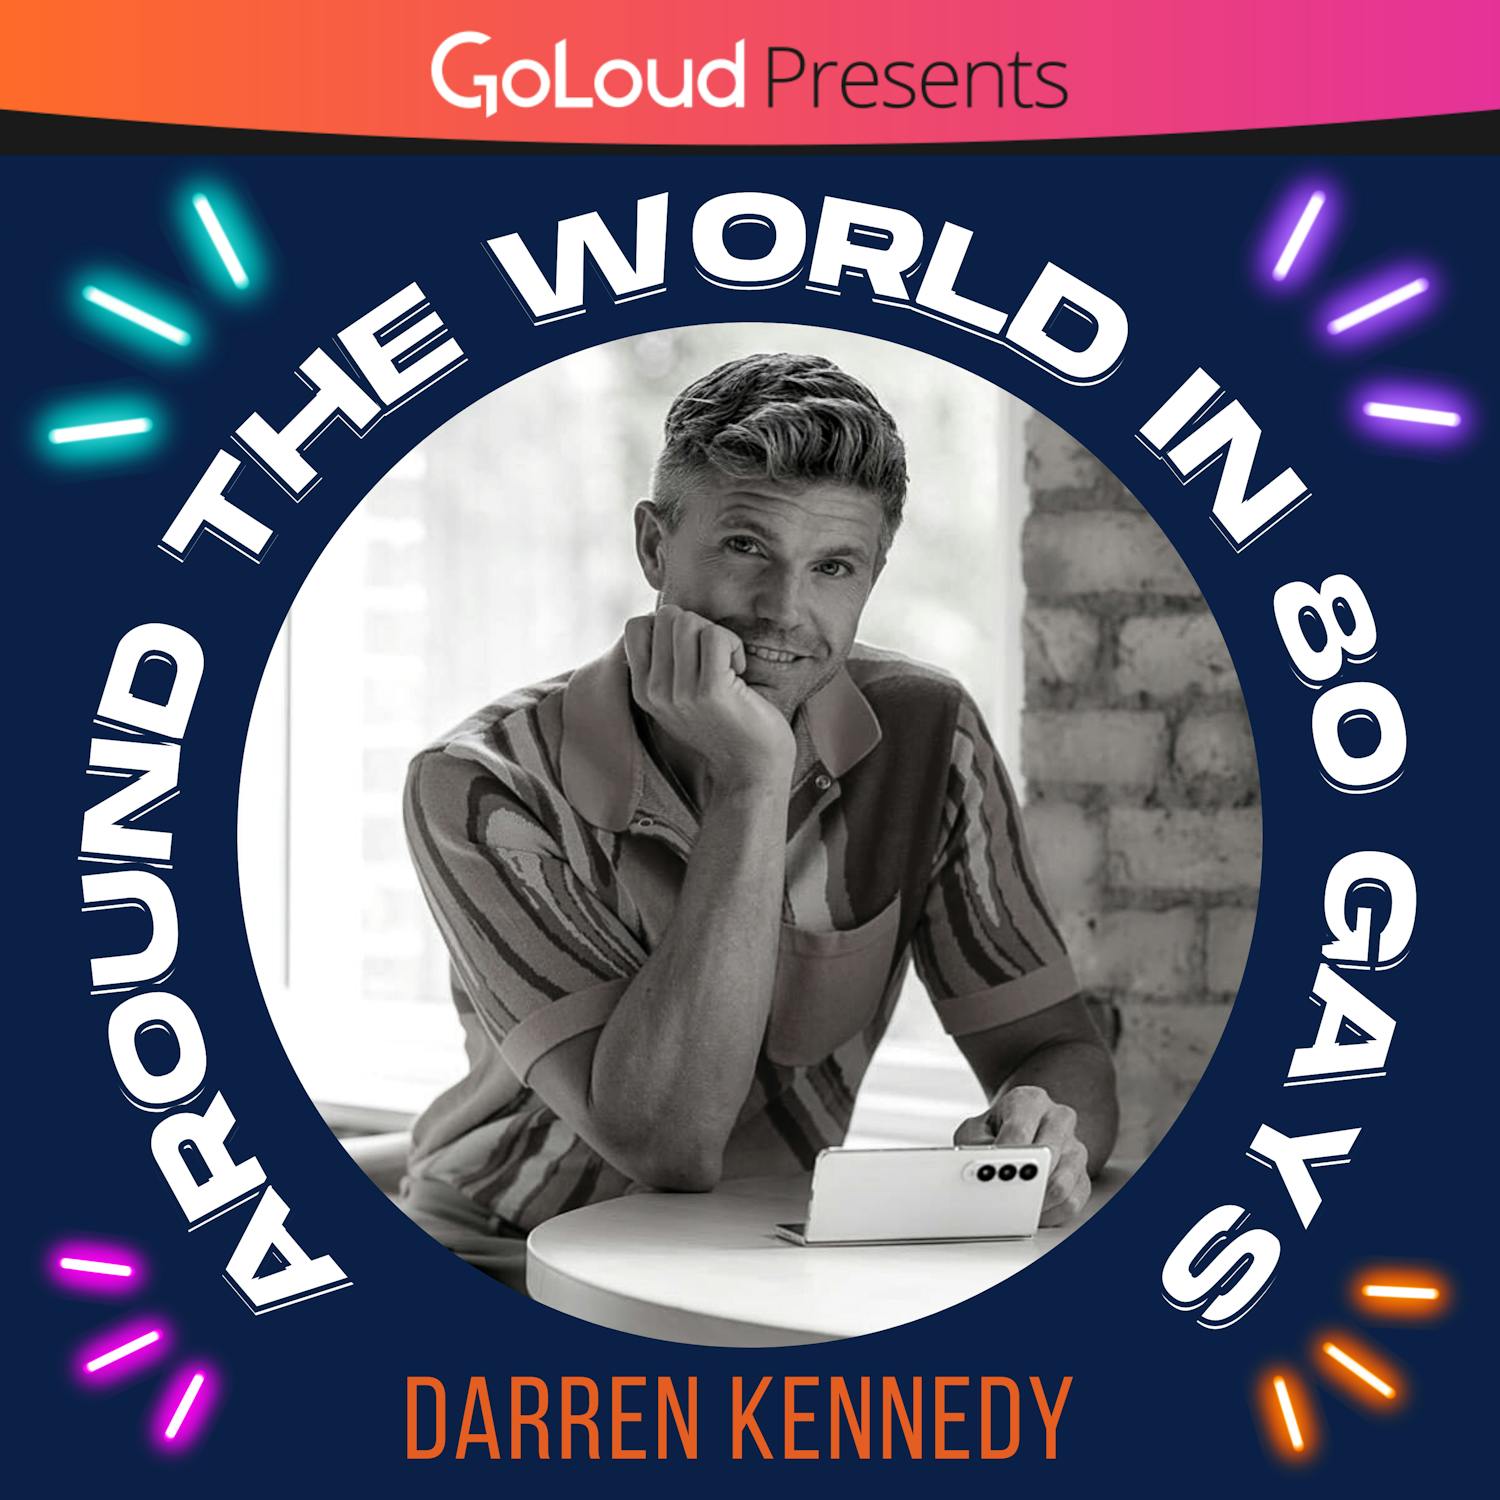 Around the World in 80 Gays meets Darren Kennedy